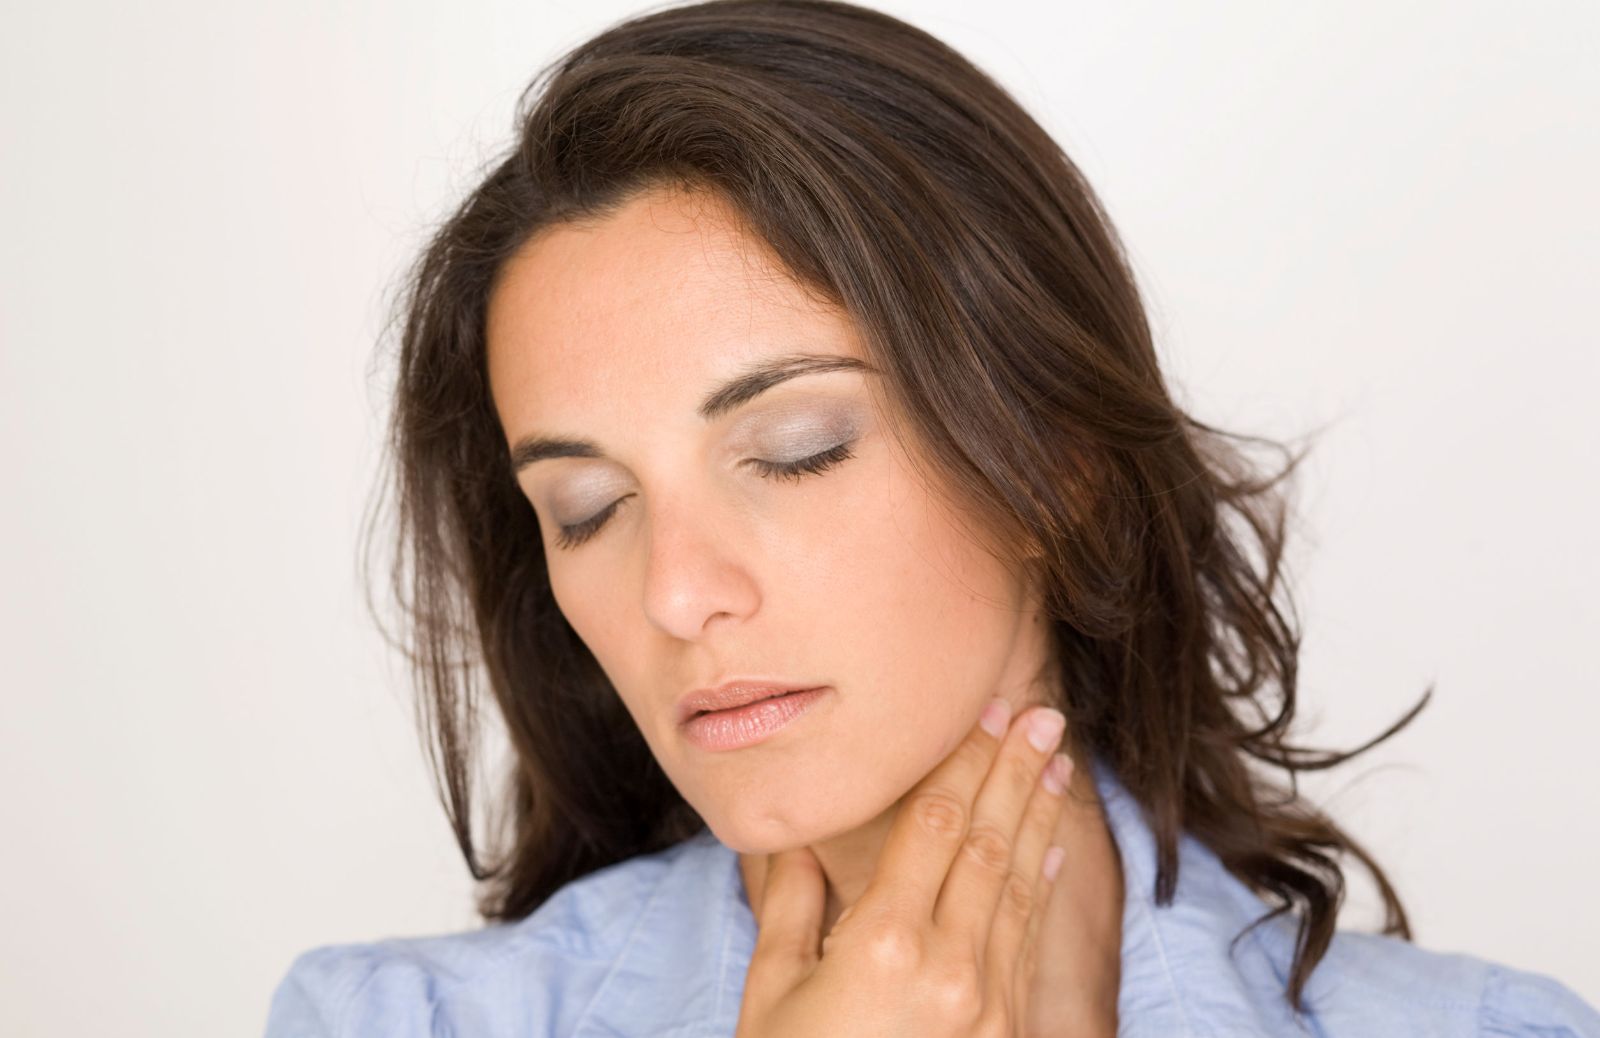 Linfonodi ingrossati sul collo: le possibili cause